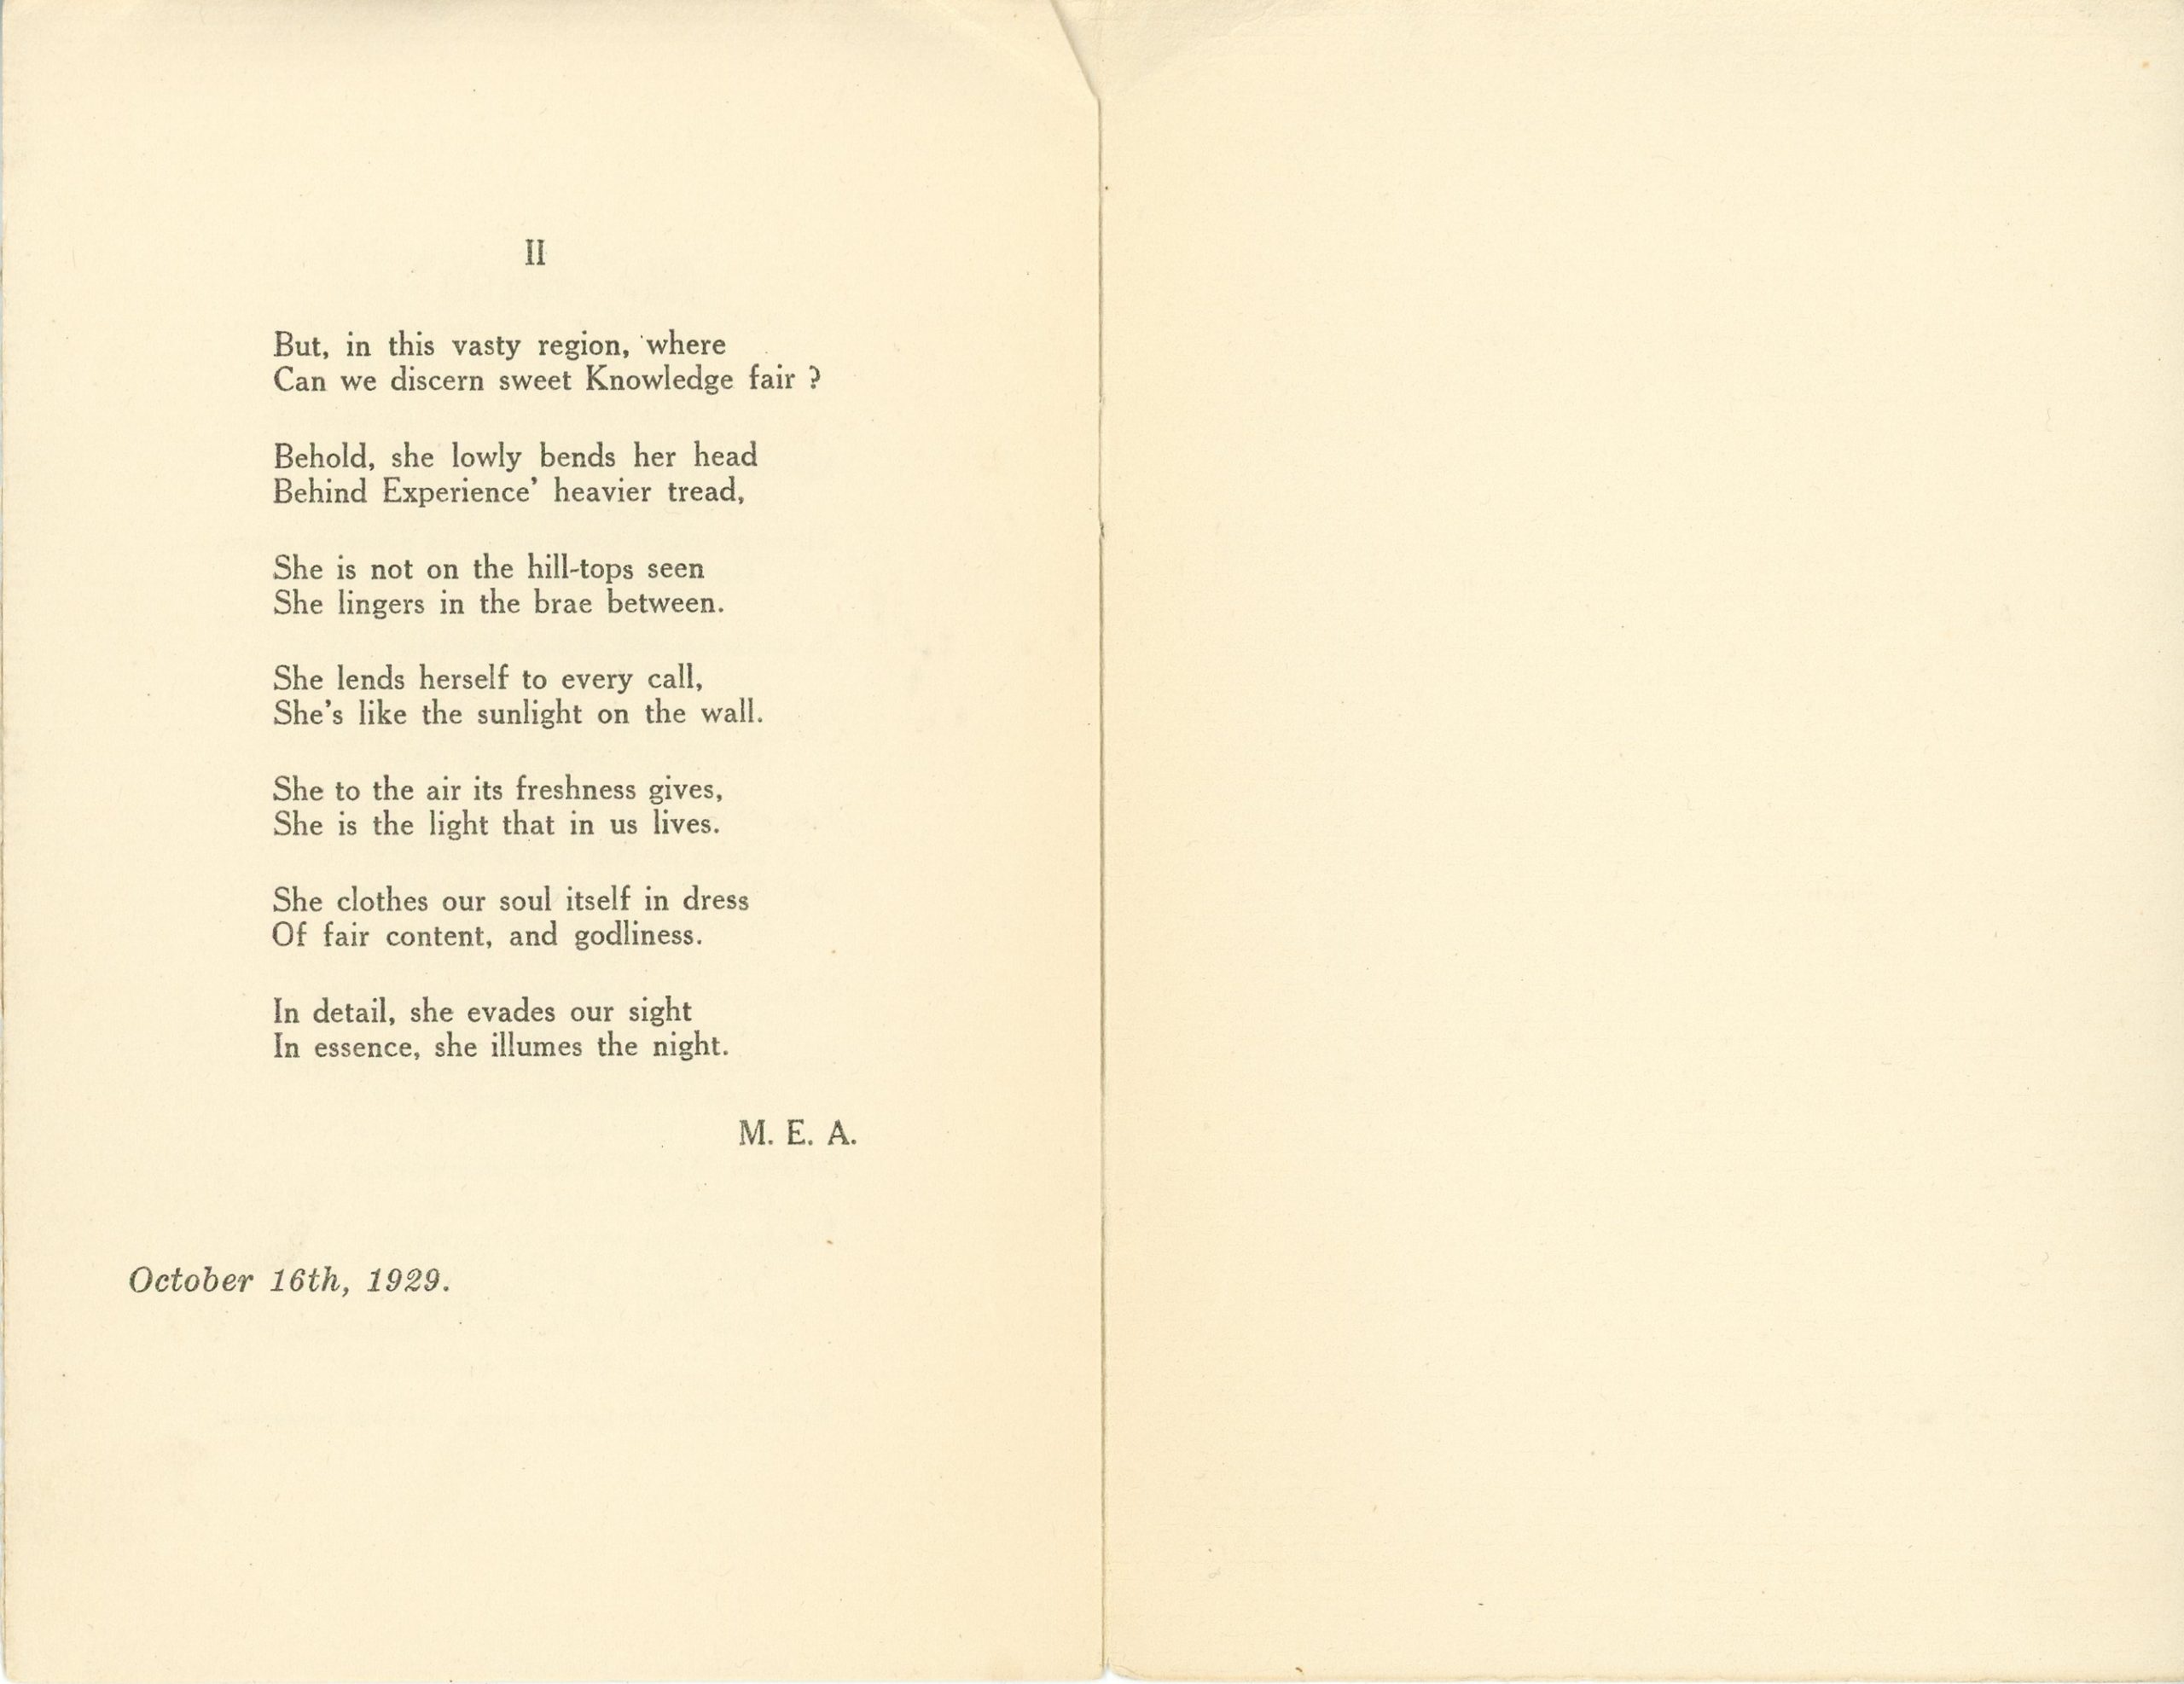 Livret de Noël rédigé par Maude Abbott en décembre 1929, 6 pages, encre noire sur papier sépia. La page couverture porte seulement l’inscription « Christmas » tandis que les pages suivantes contiennent les meilleurs vœux de Noël de Maude Abbott ainsi que deux de ses poèmes, soit « Ab bitam resurgo » et « My Mind ».